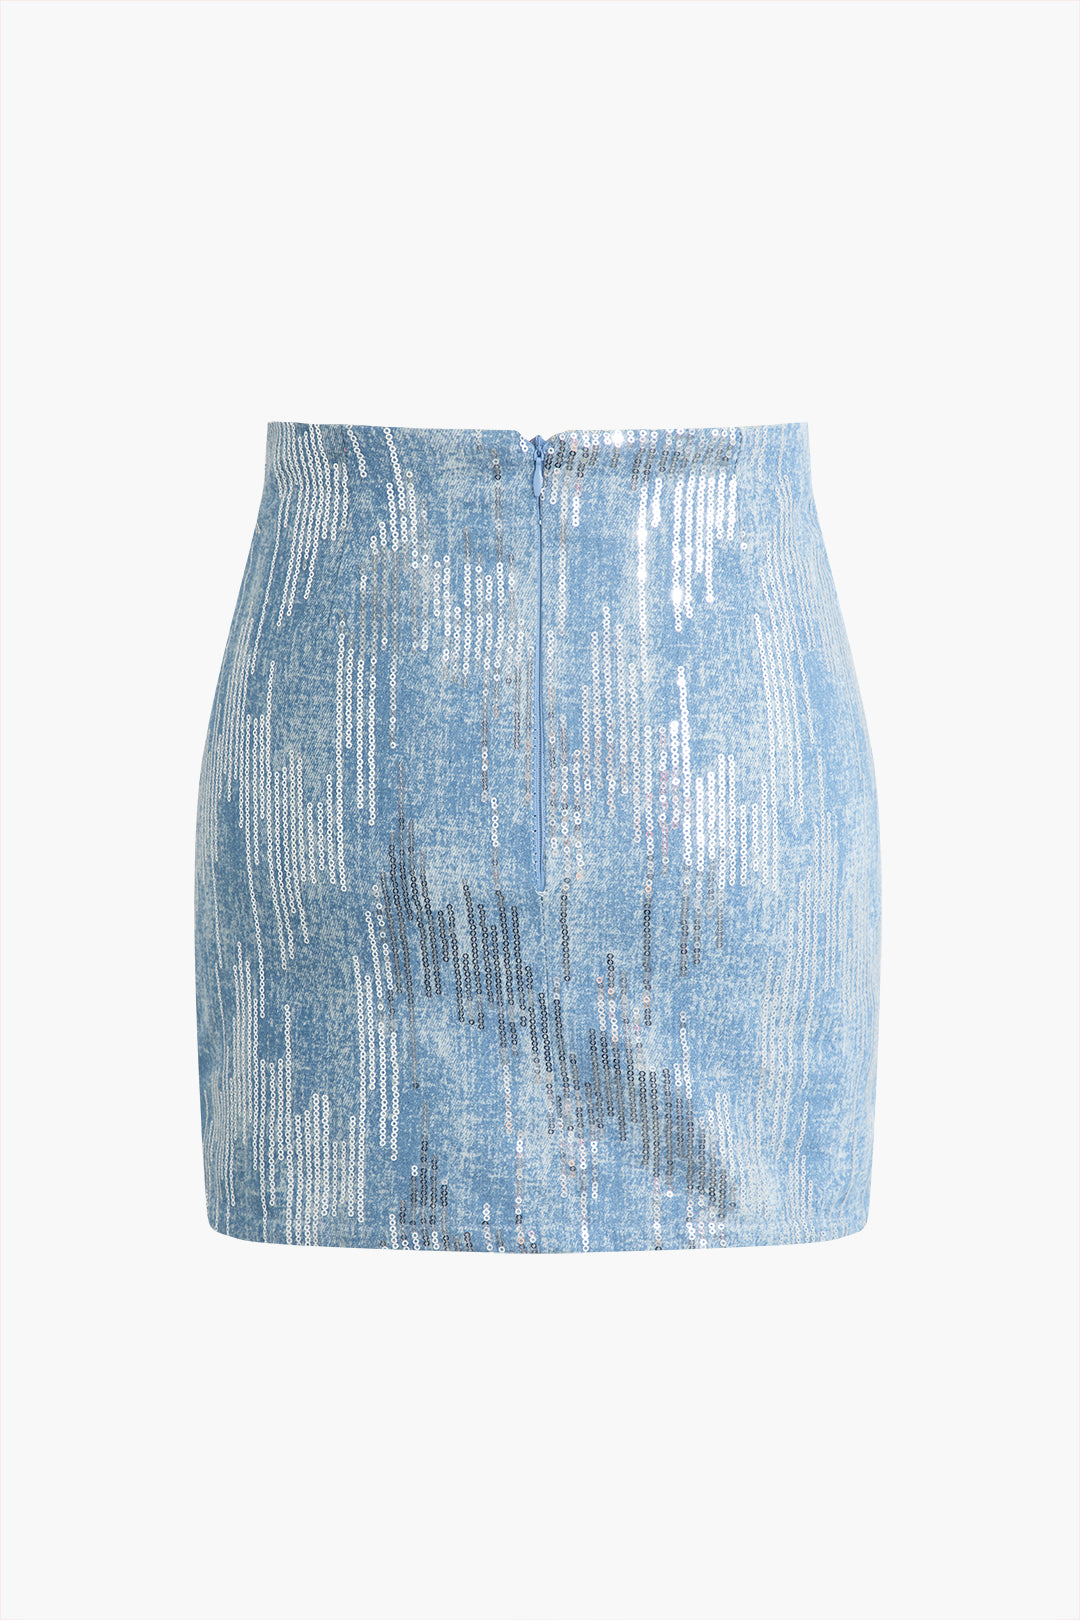 Sequin Denim Mini Skirt